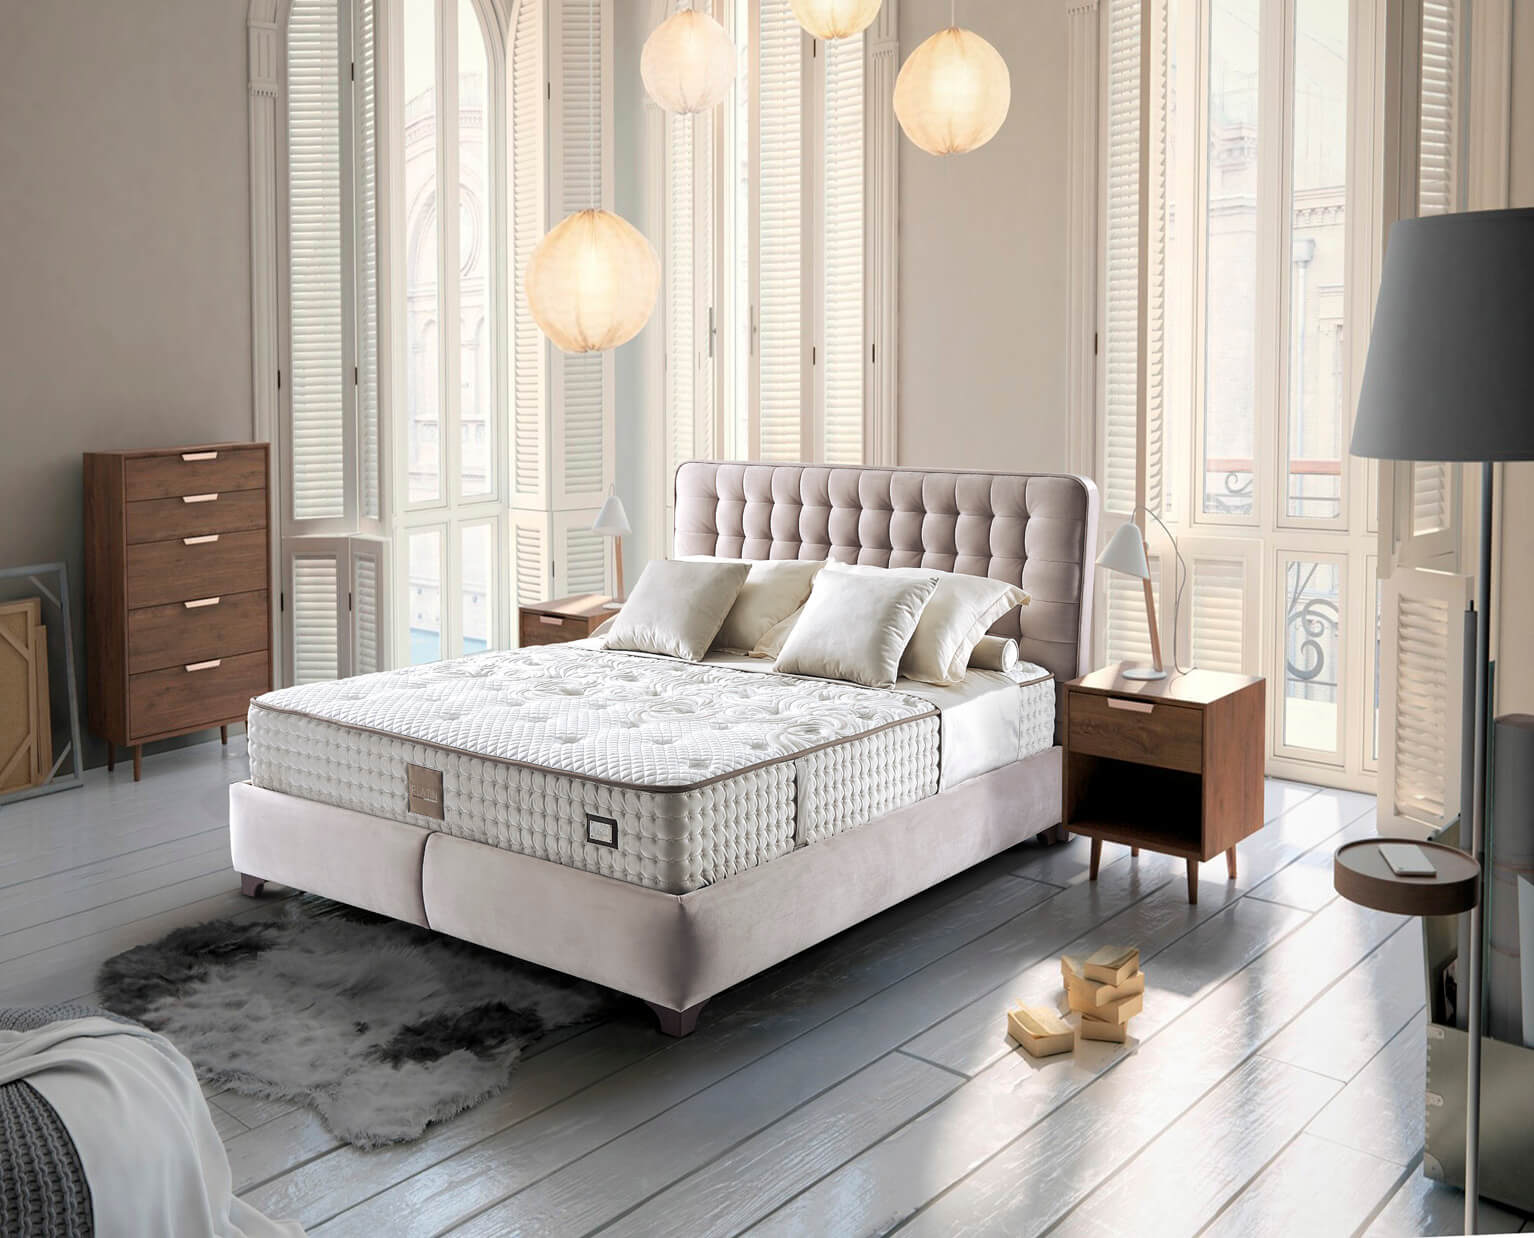 מיטה מעוצבת עם ארגז מצעים דגם נובה+לטו